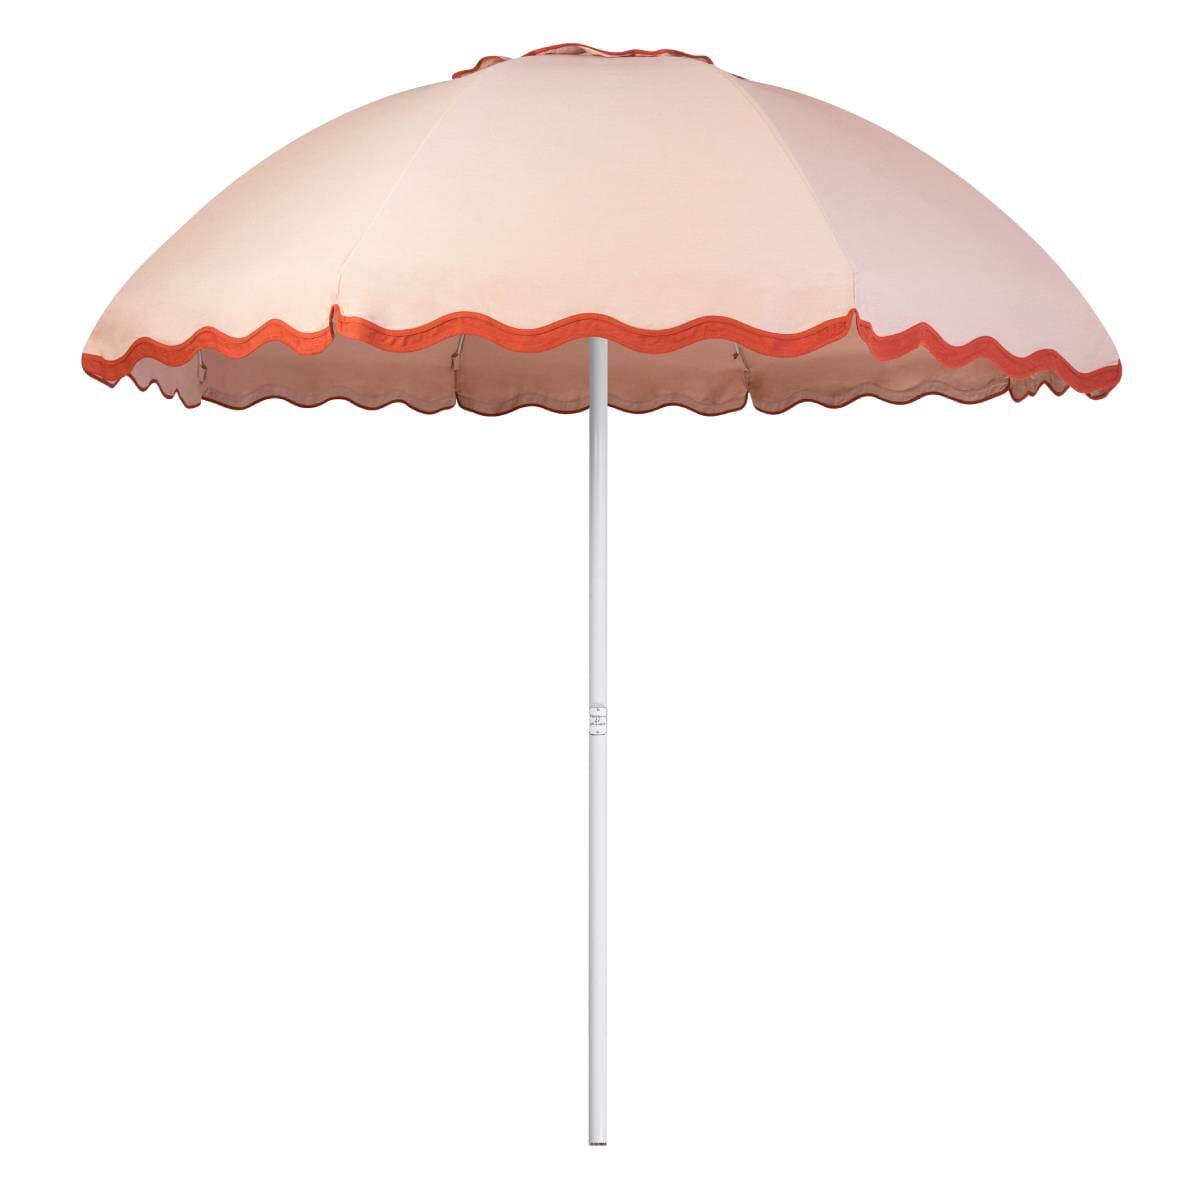 The Patio Umbrella - Rivie Pink Patio Umbrella Business & Pleasure Co Aus 